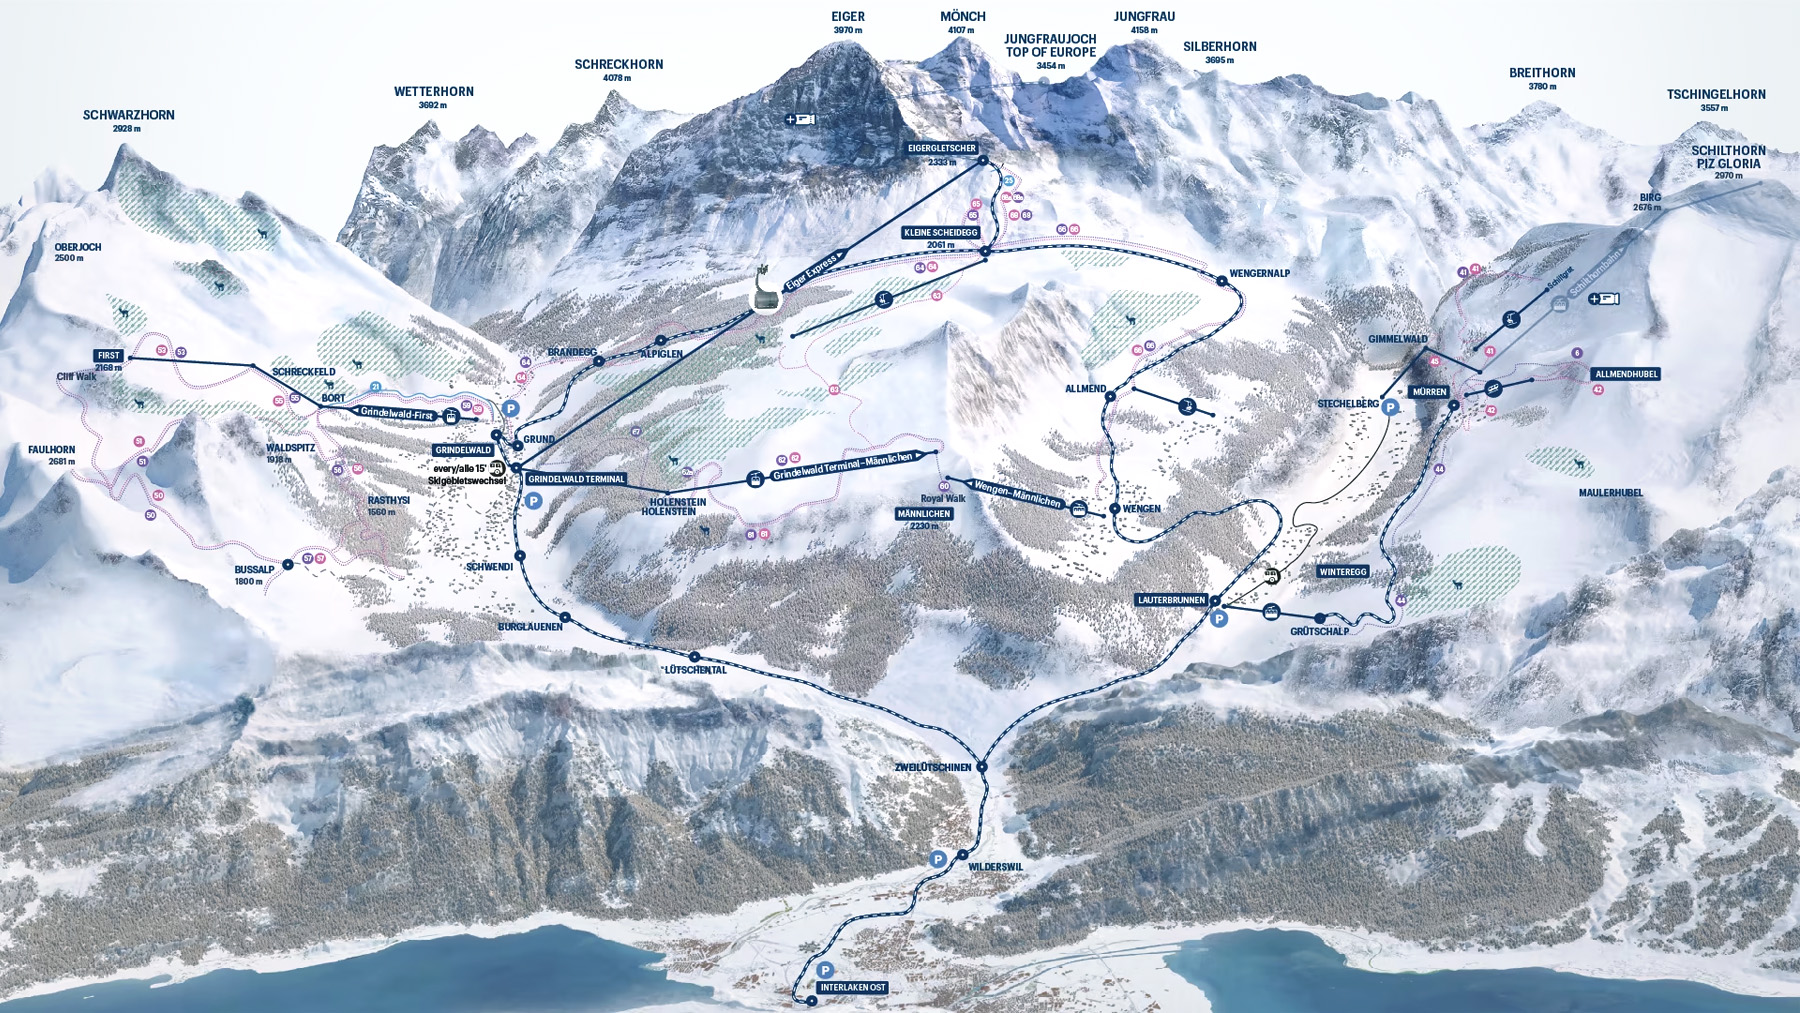 瑞士火車票如何買 – 三月冬季篇 - Jungfrau 少女峰區兩天通行證 Hiking and sledging Pass